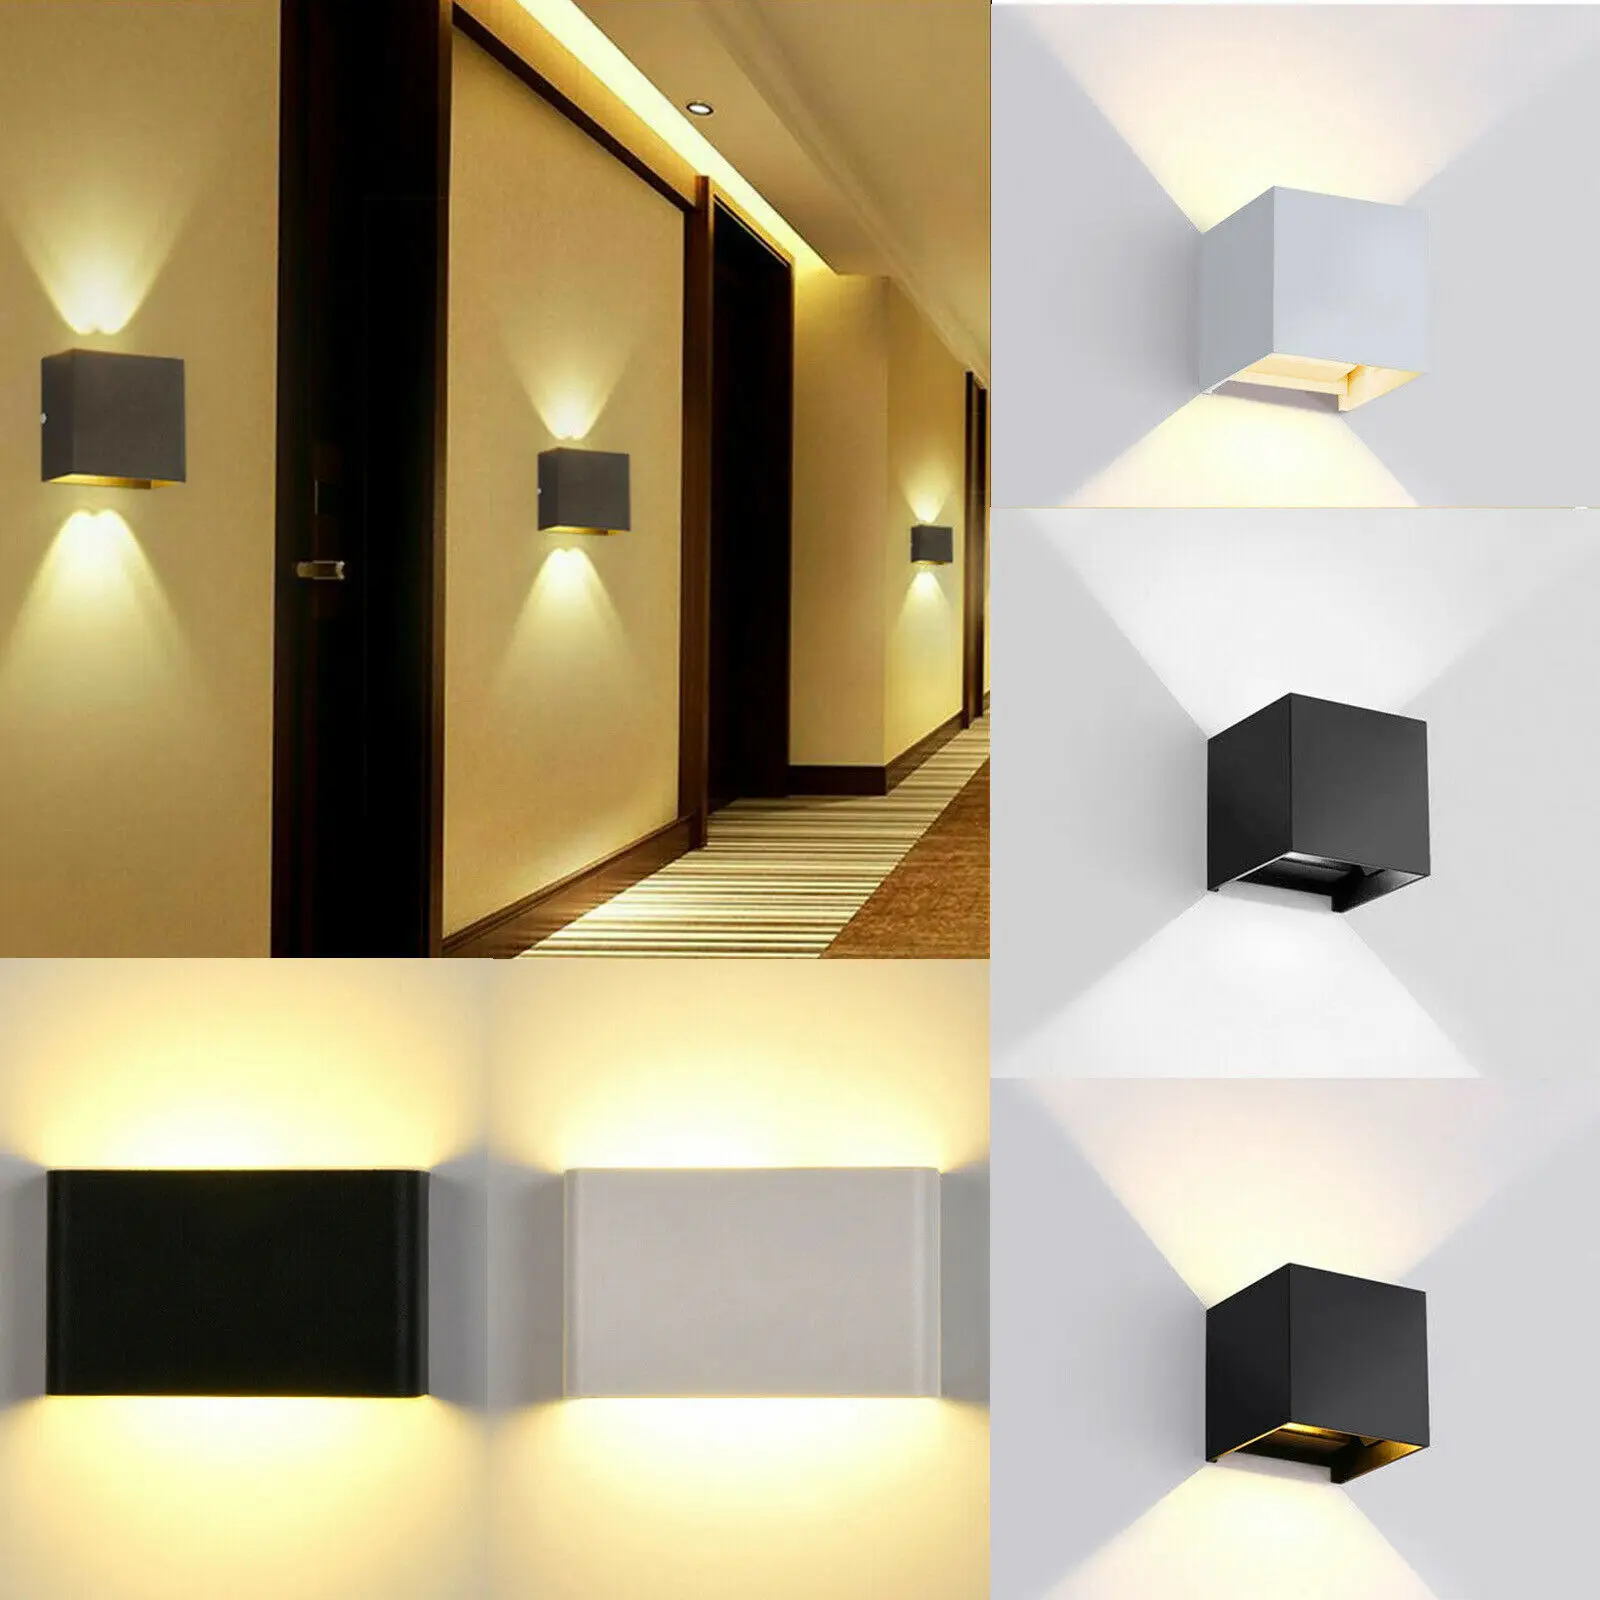 Lâmpadas de parede simples e modernas Arandela de parede Iluminação 360°  Rotativas para ambientes internos LED de alumínio acrílico quarto de hotel  luminárias de leitura 7W branco quente (3000K) (preto)